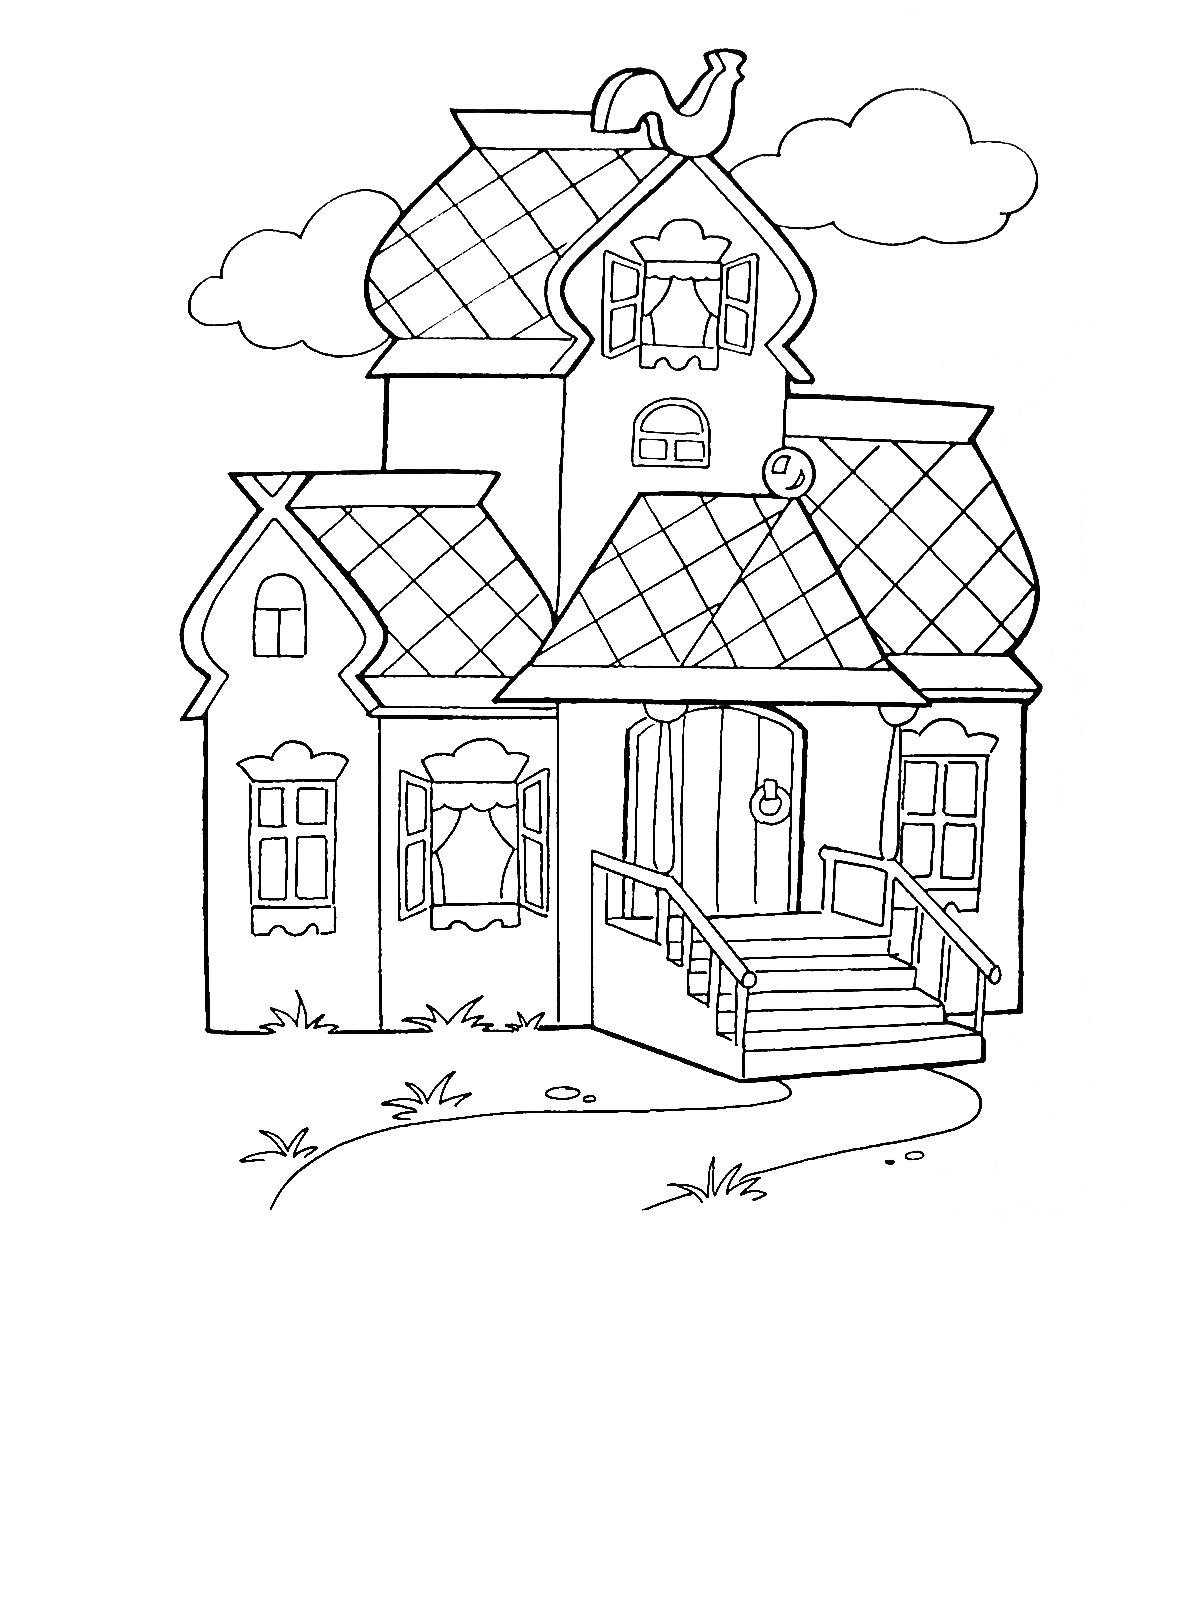 Раскраска Теремок с петухом на крыше, окном на чердаке, крыльцом с перилами и тремя окнами.